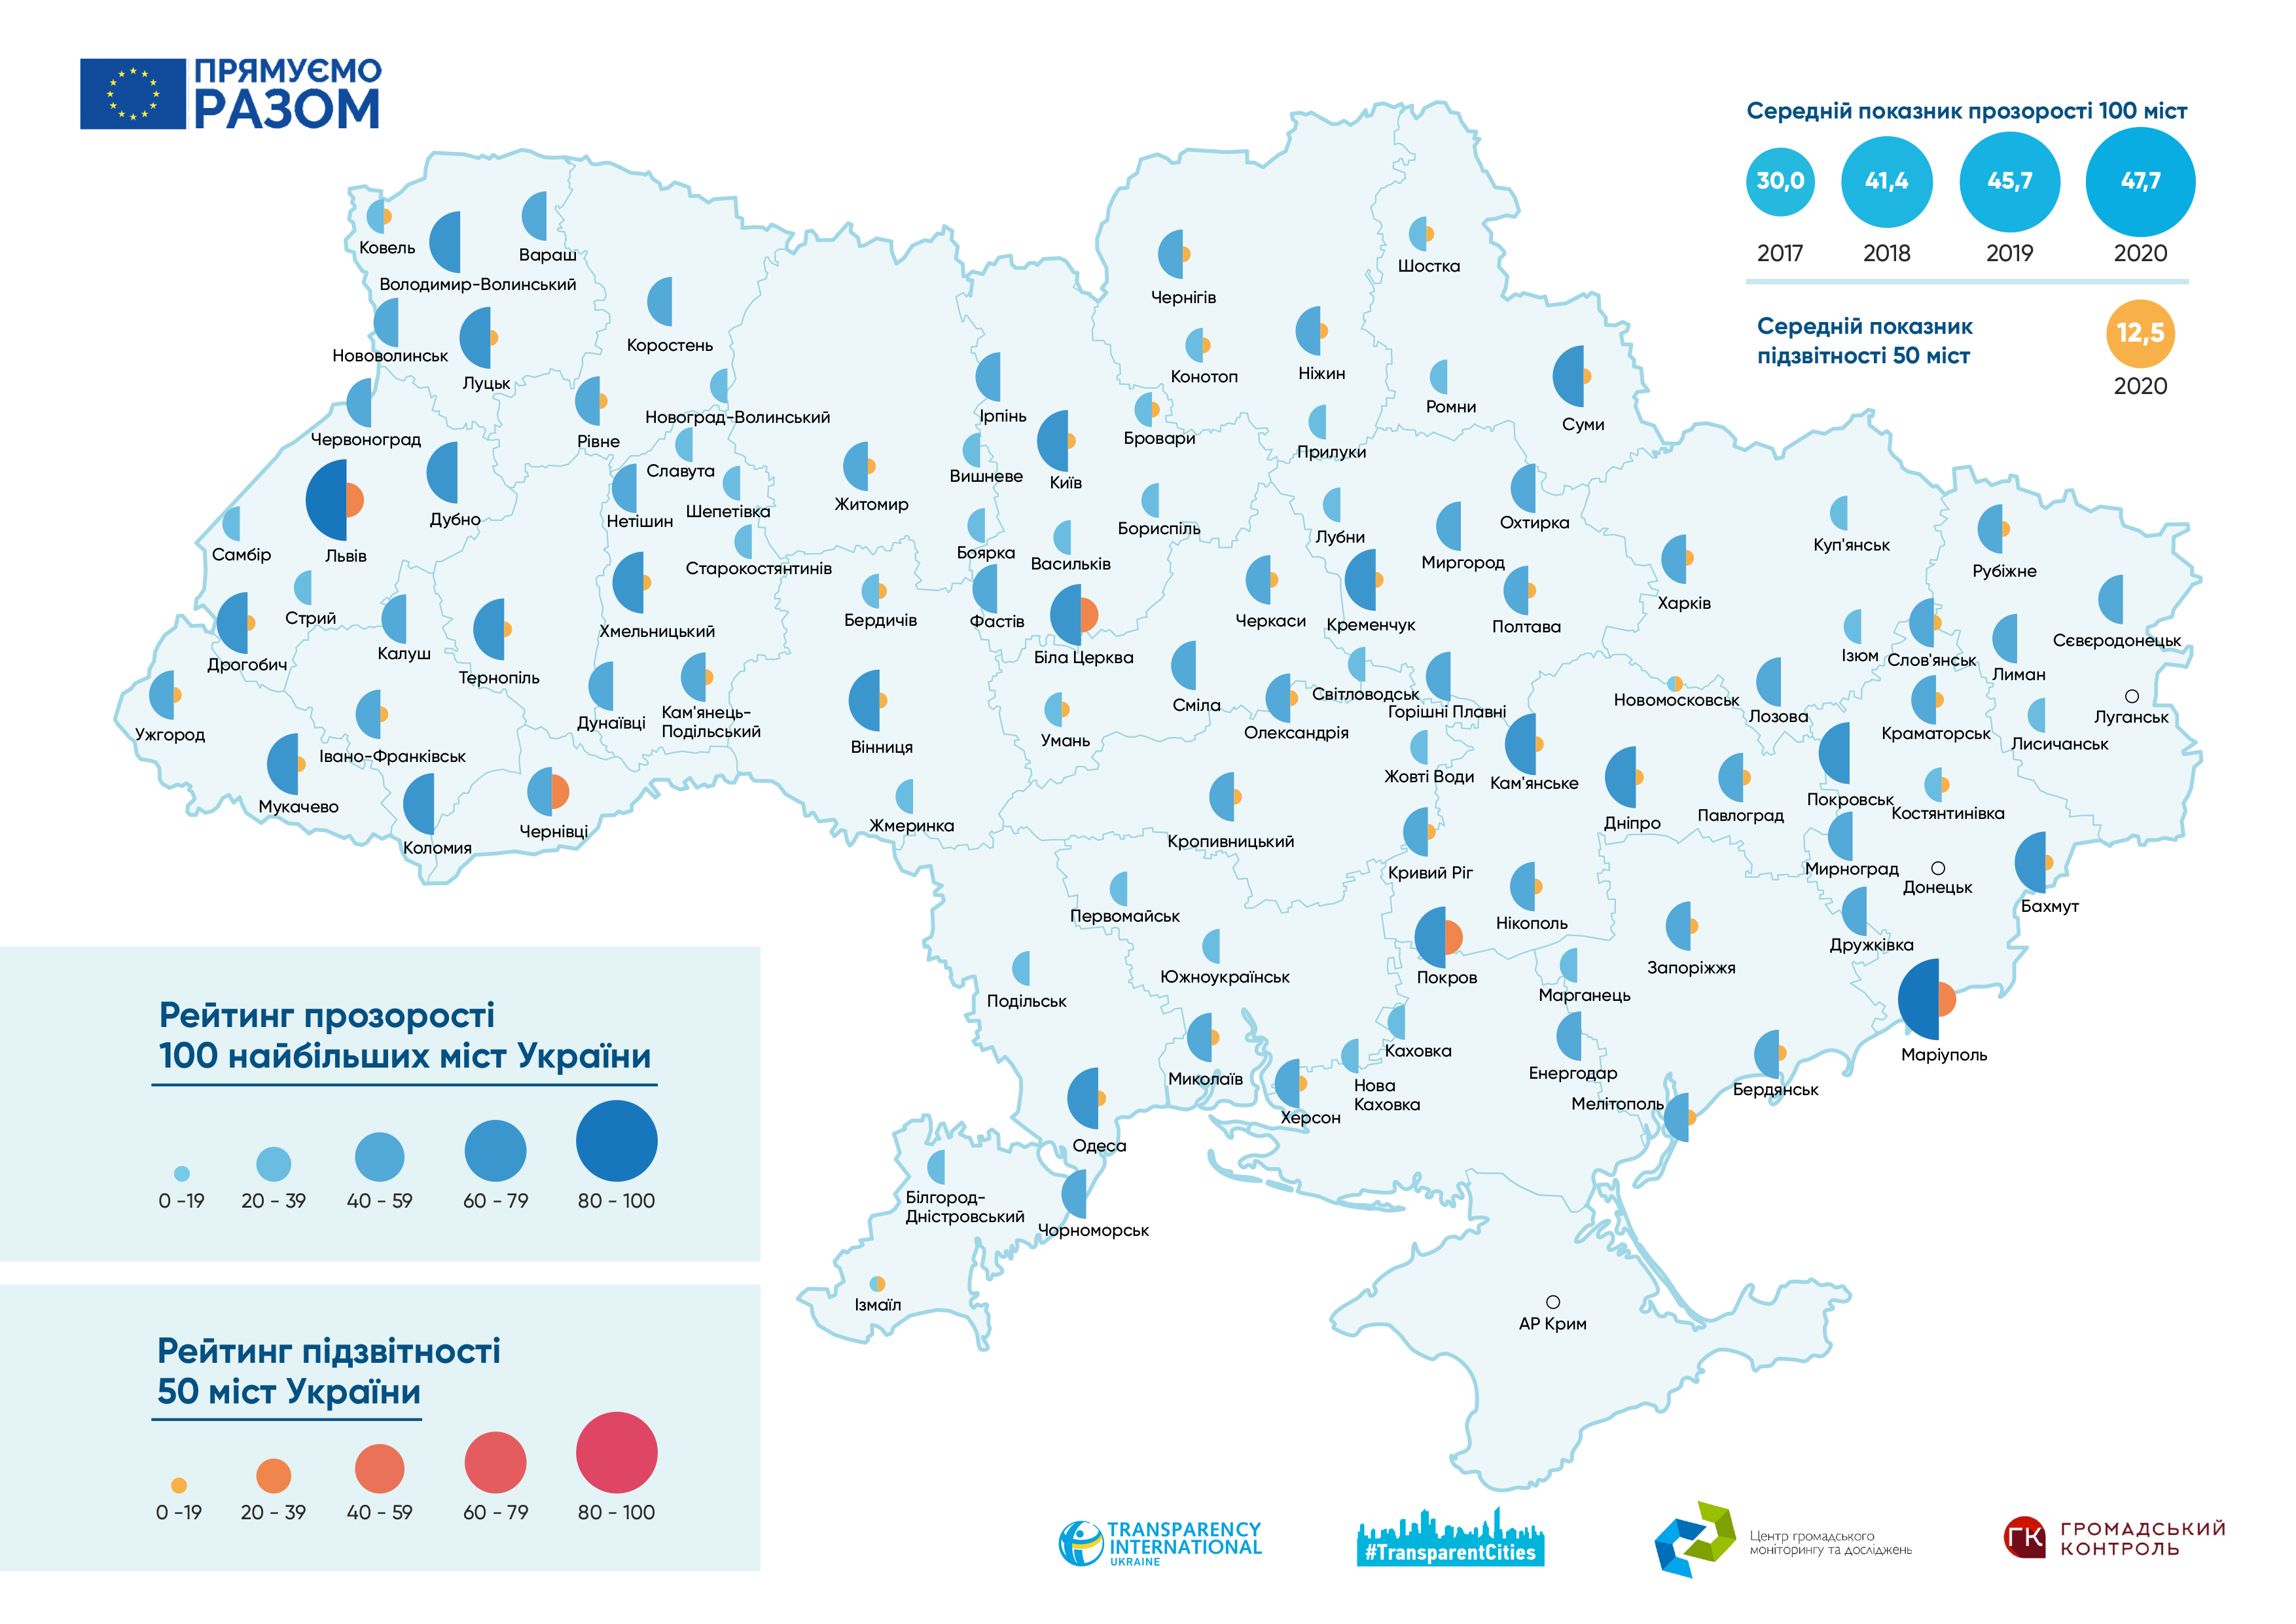 Рейтинг прозрачности и подотчетности украинских городов-2020. Лидер совсем неочевидный 